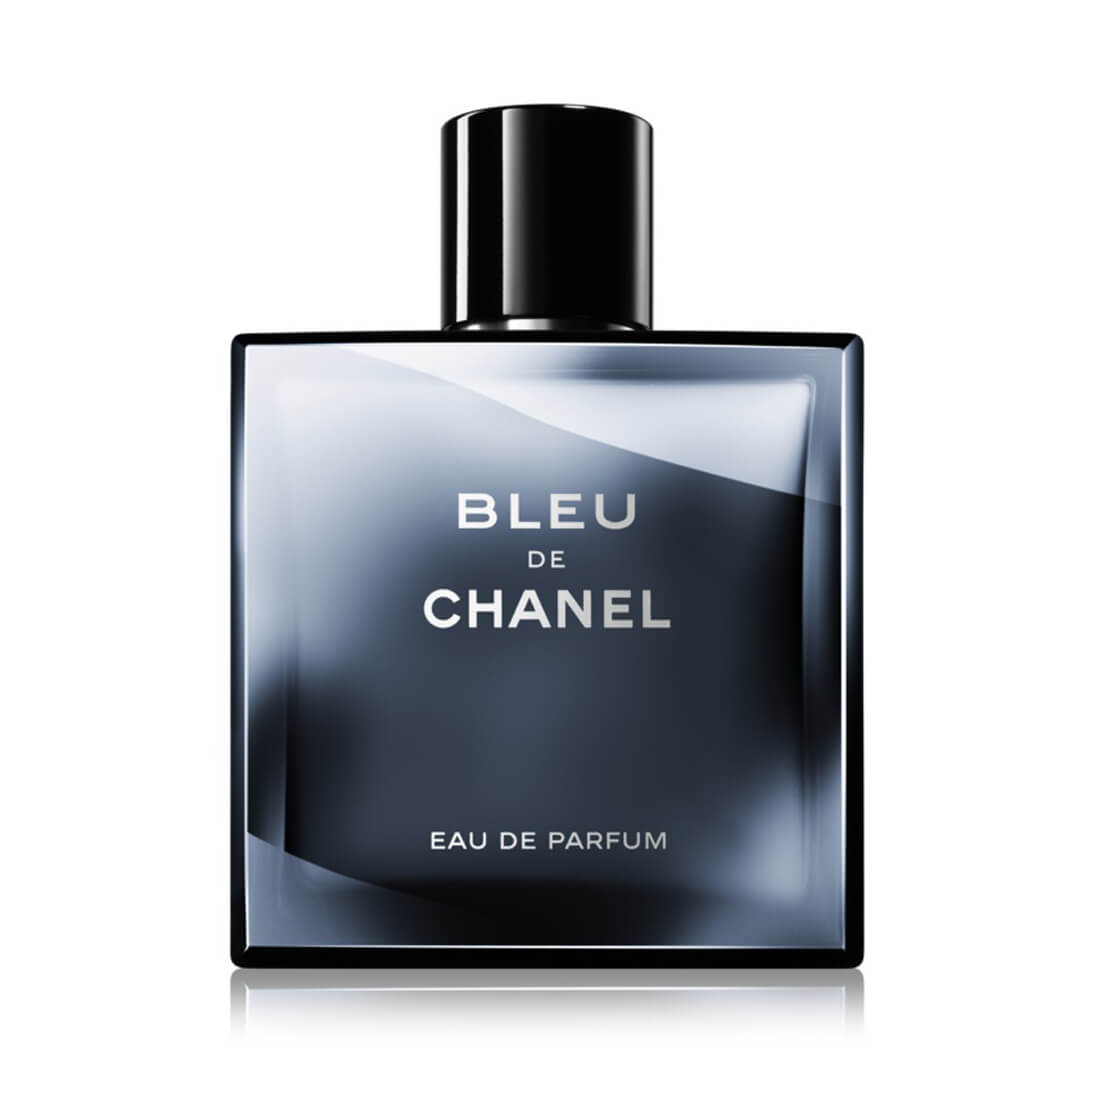 Chanel Bleu de Chanel perfume for men